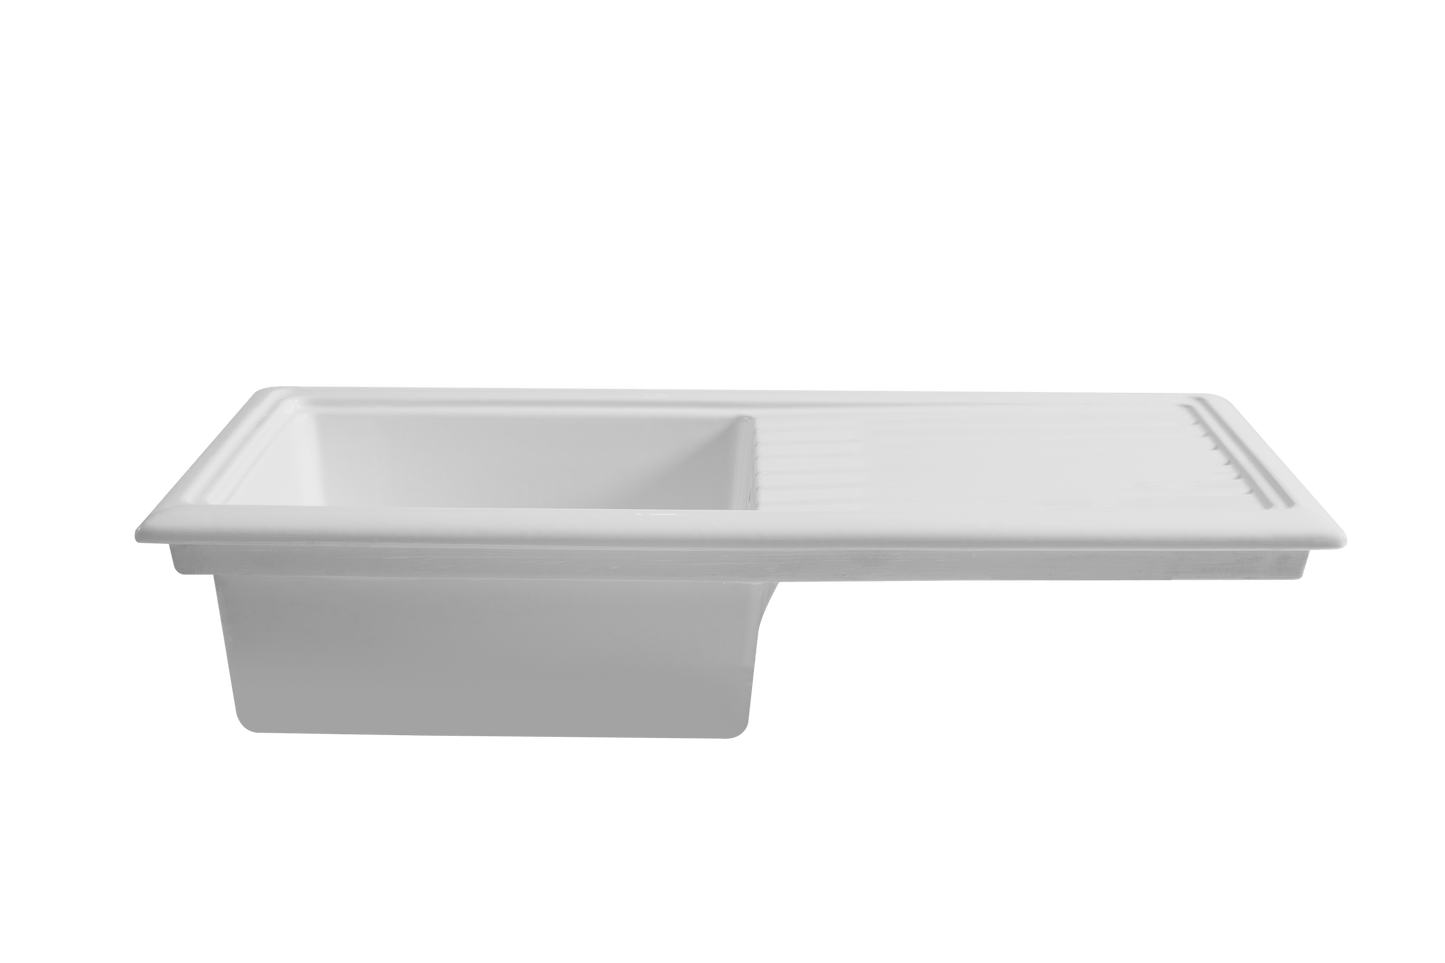 ceramic kitchen sink adelaide